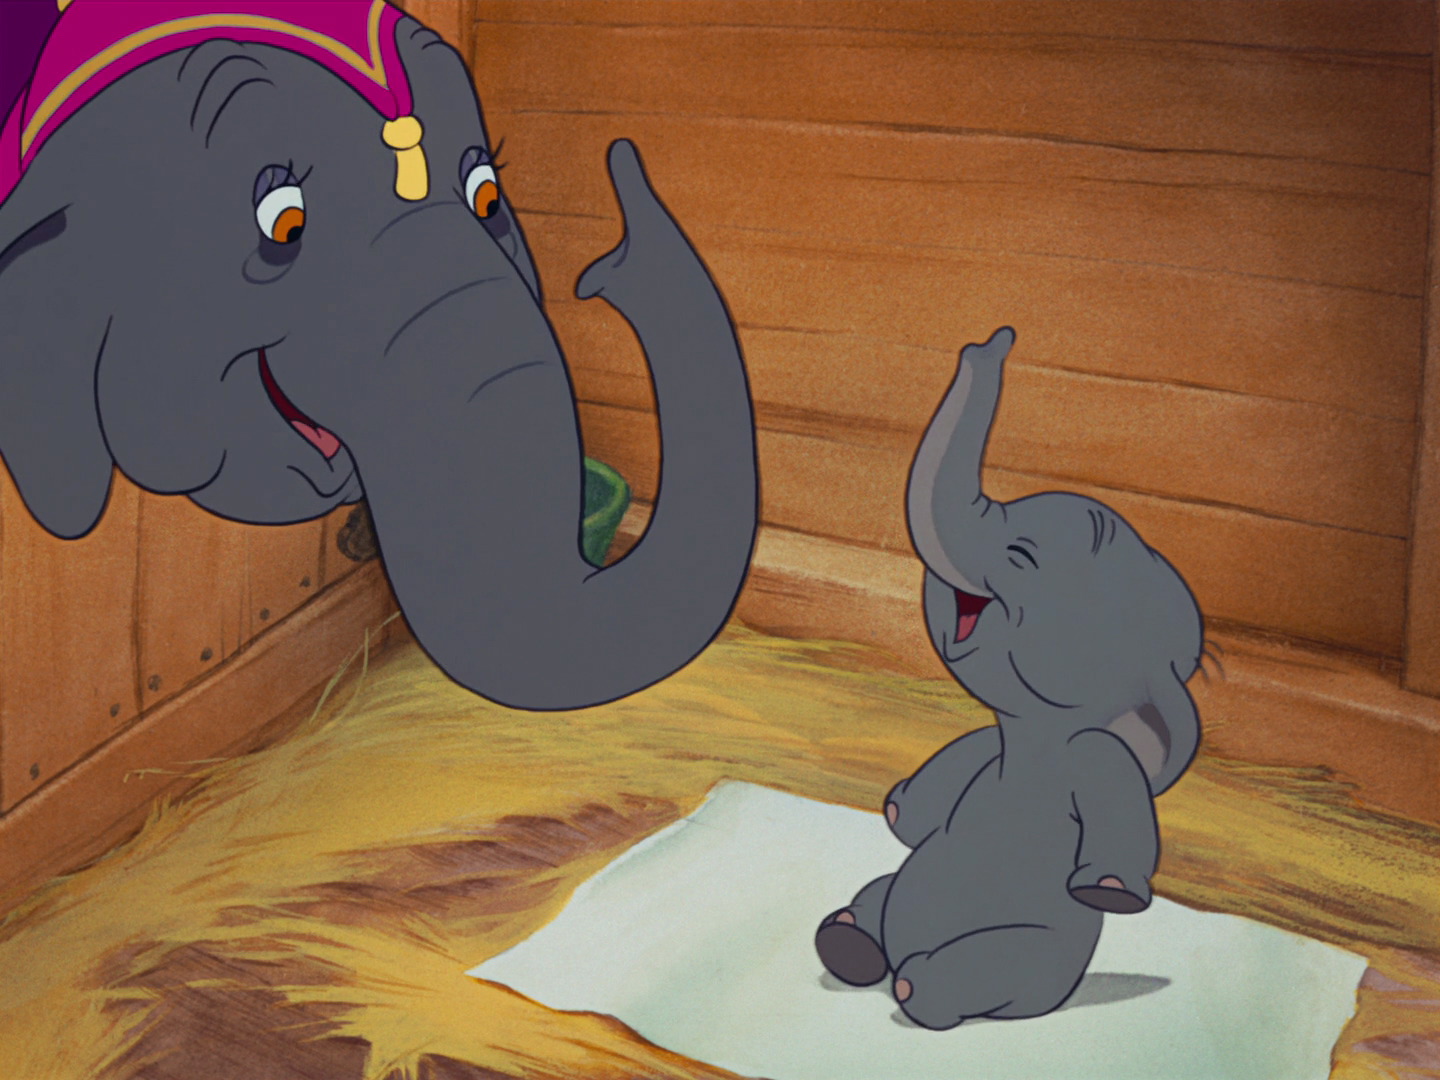 Dumbo 2